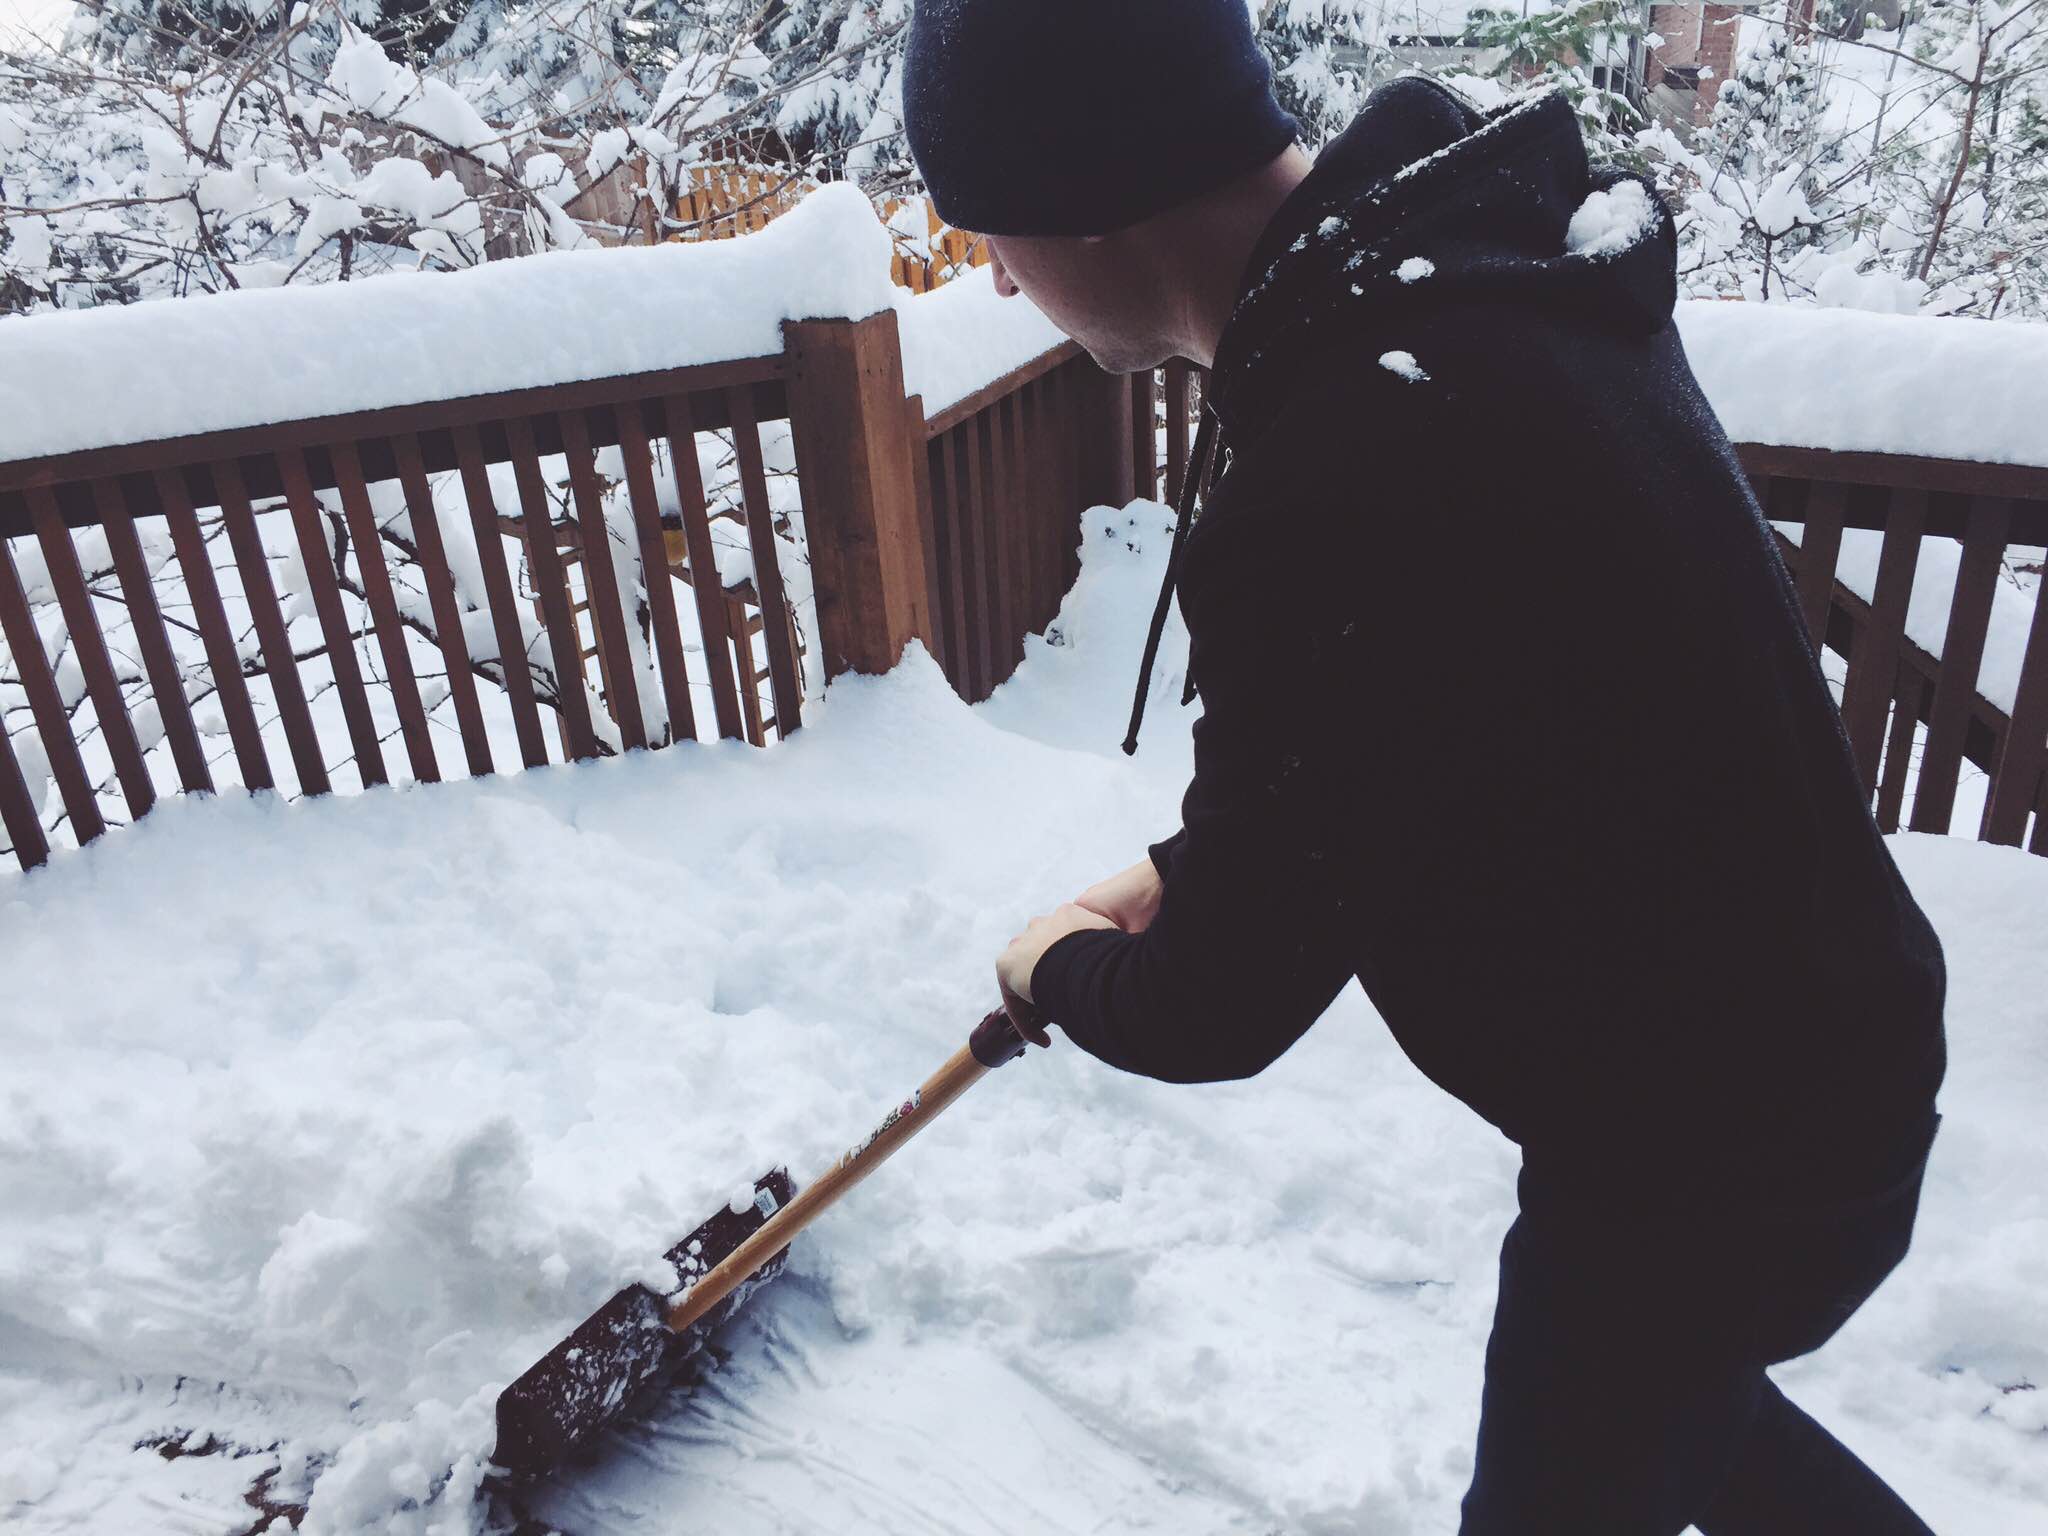 Matt shoveling